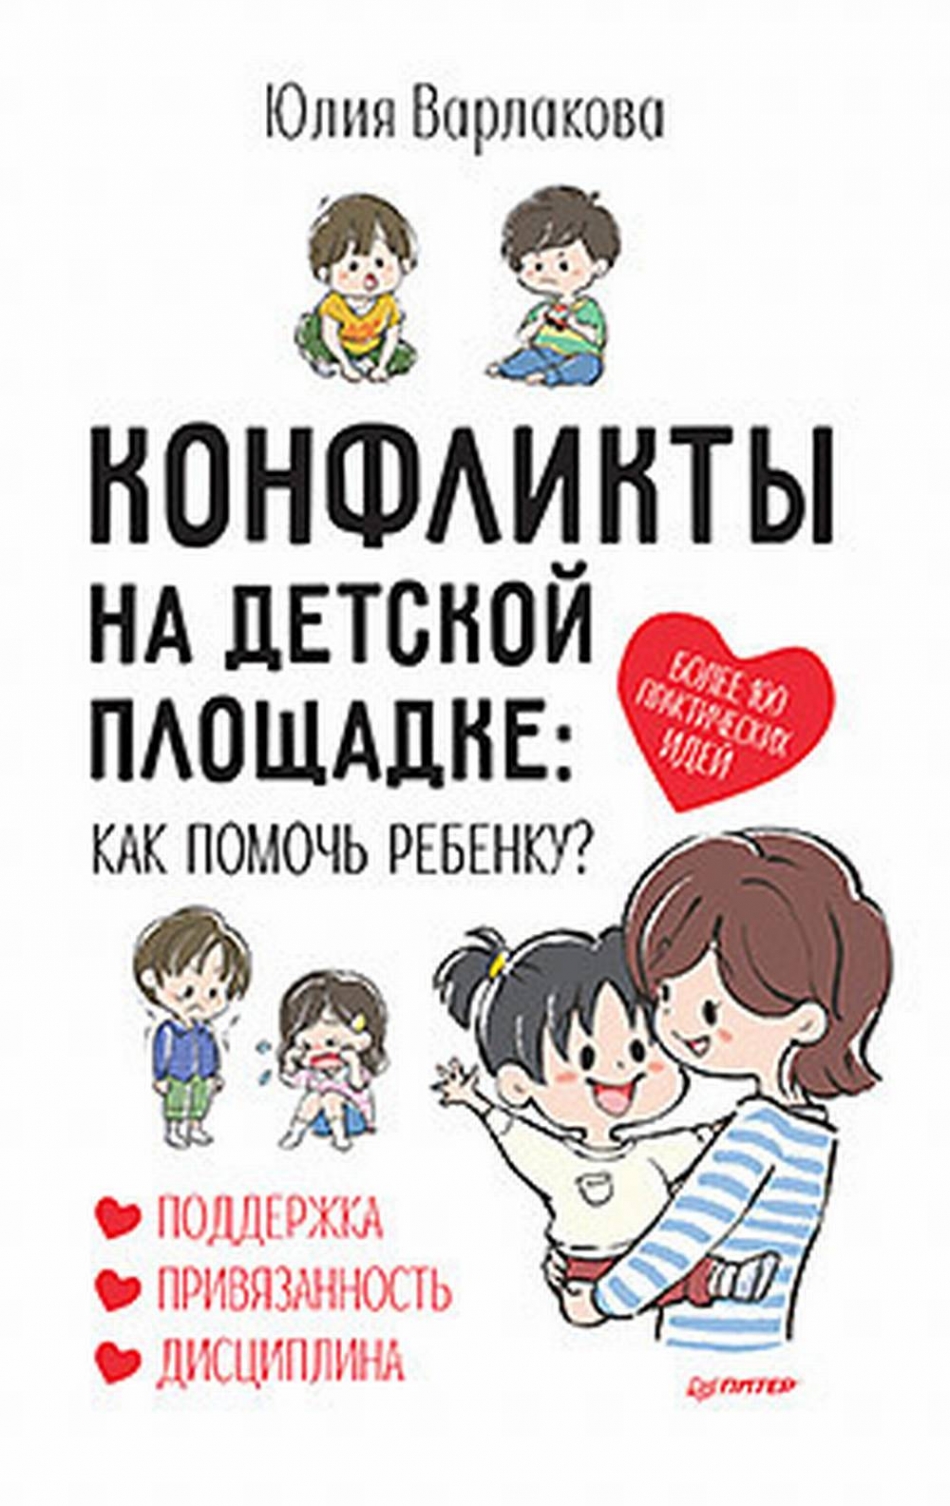 Варлакова Ю. Конфликты на детской площадке: как помочь ребенку? 